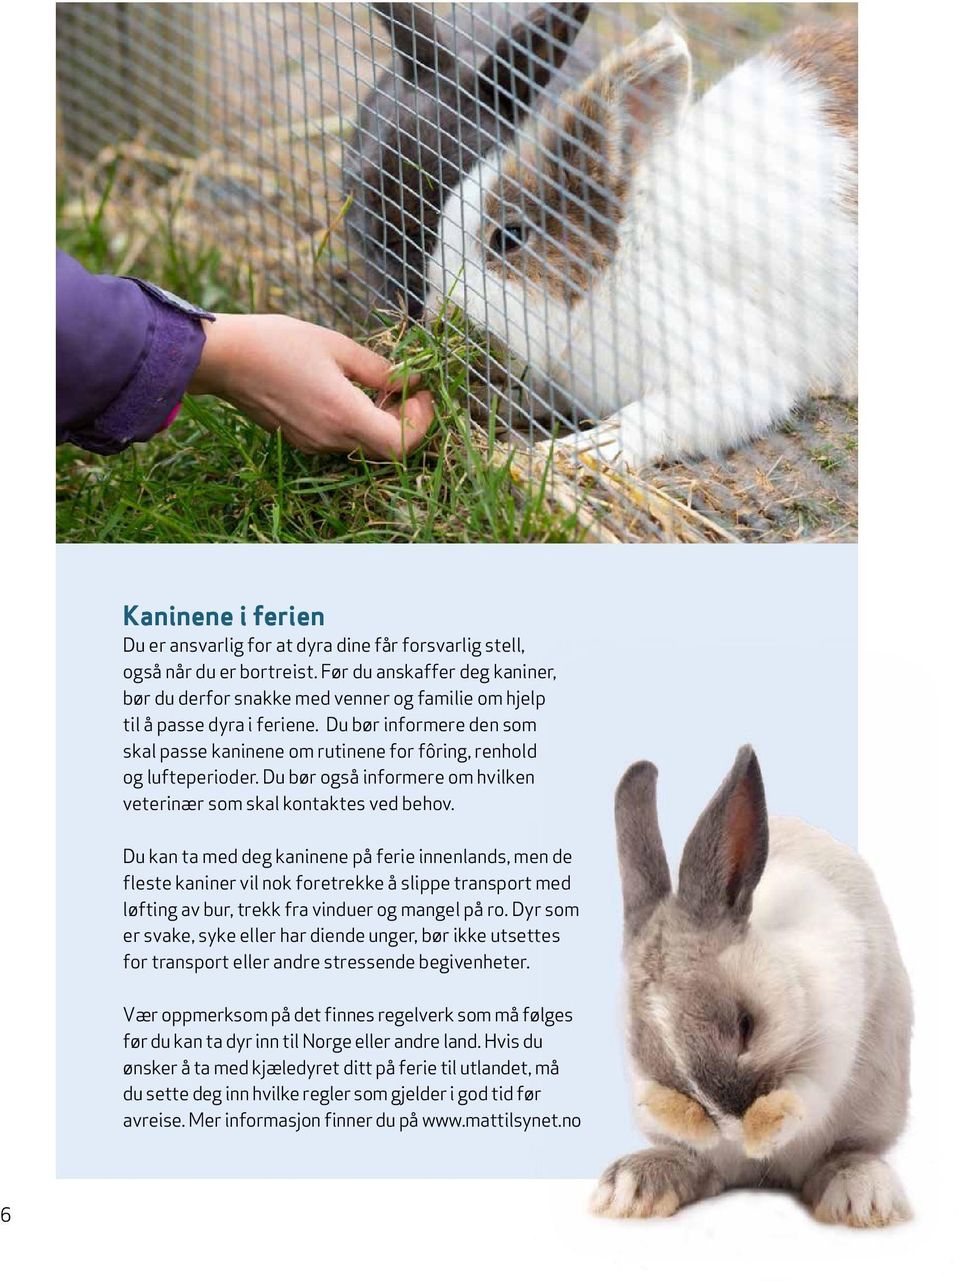 Du bør informere den som skal passe kaninene om rutinene for fôring, renhold og lufteperioder. Du bør også informere om hvilken veterinær som skal kontaktes ved behov.